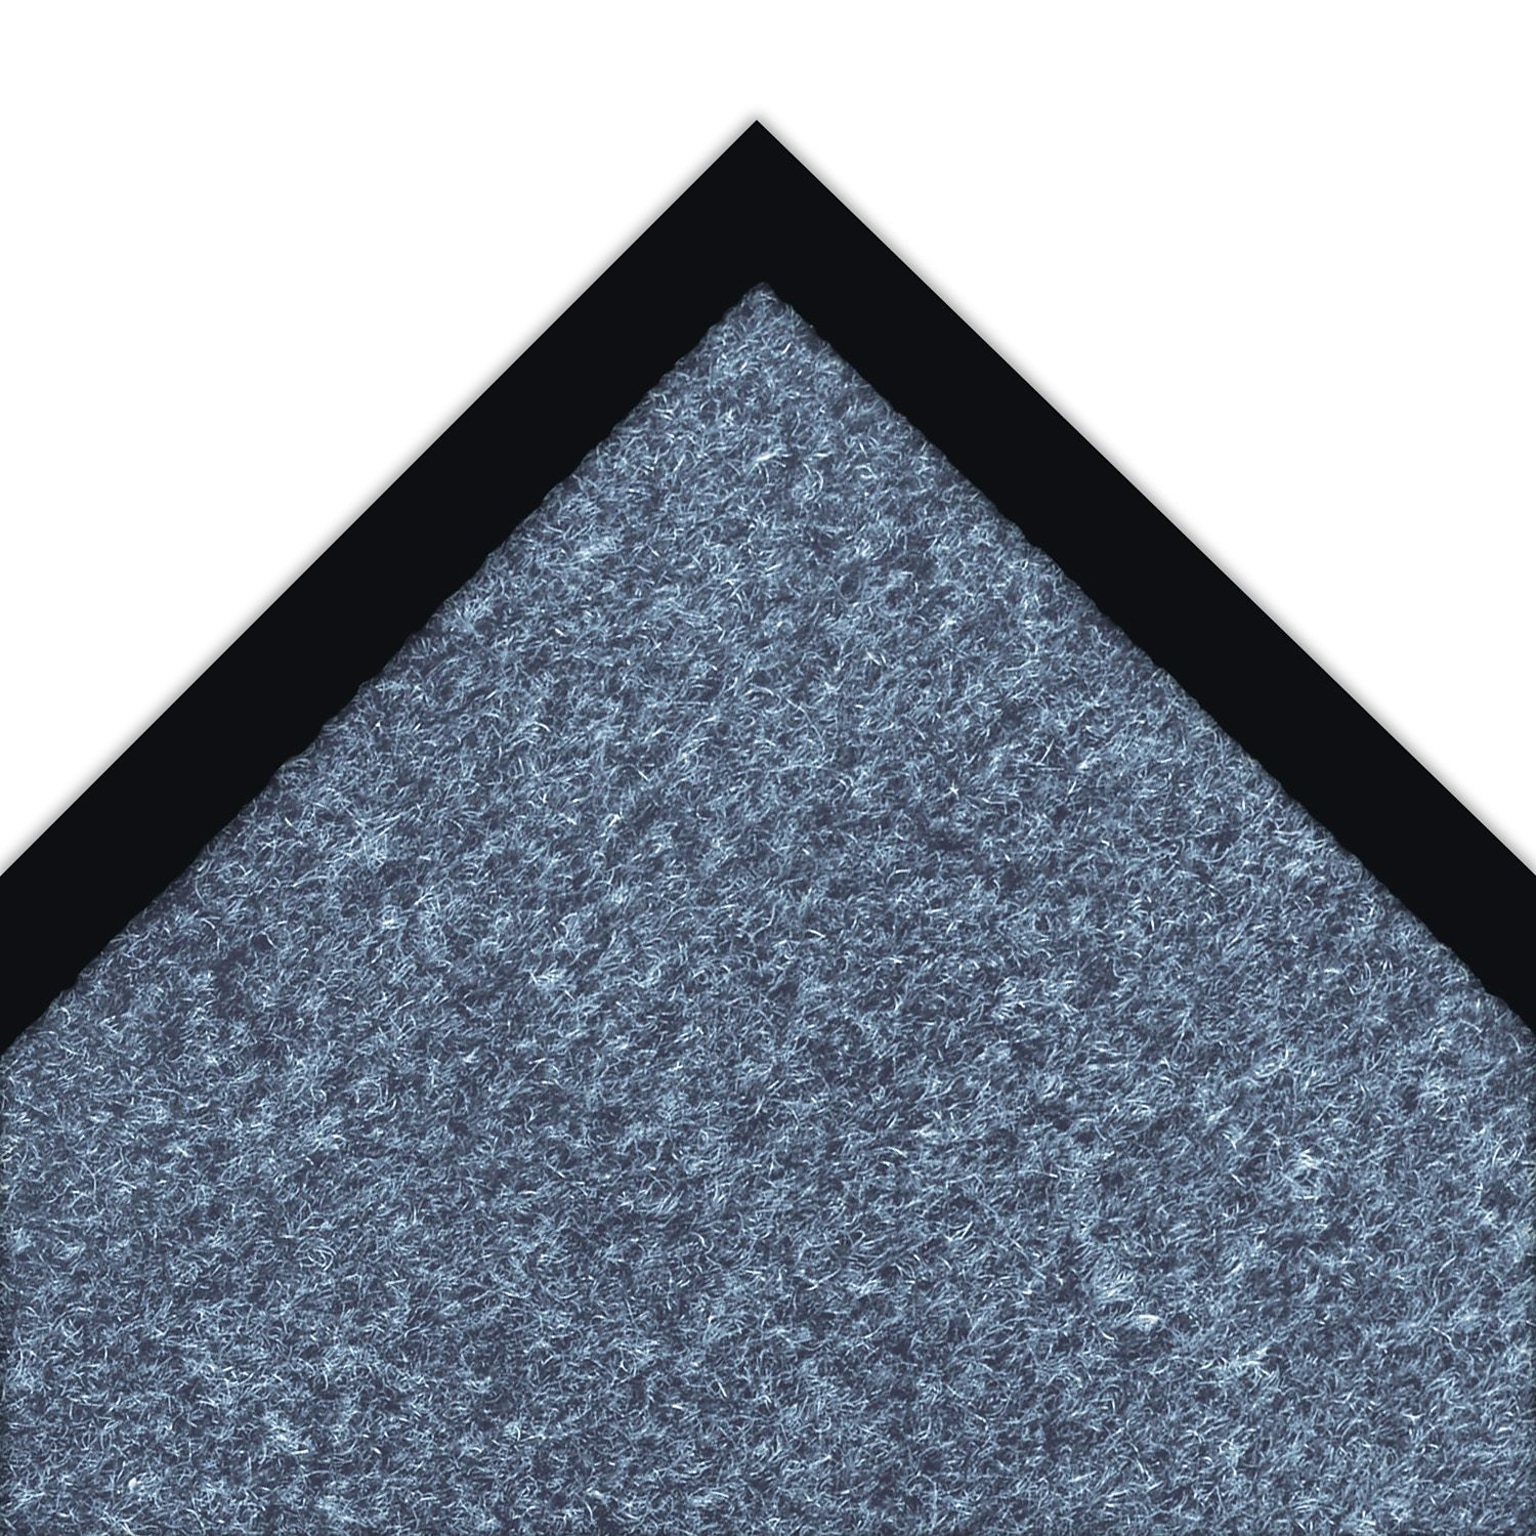 NoTrax Akro Sabre Decalon Fiber Better Entrance Floor Mat, 36 x 60, Slate Blue (130S0035BU)